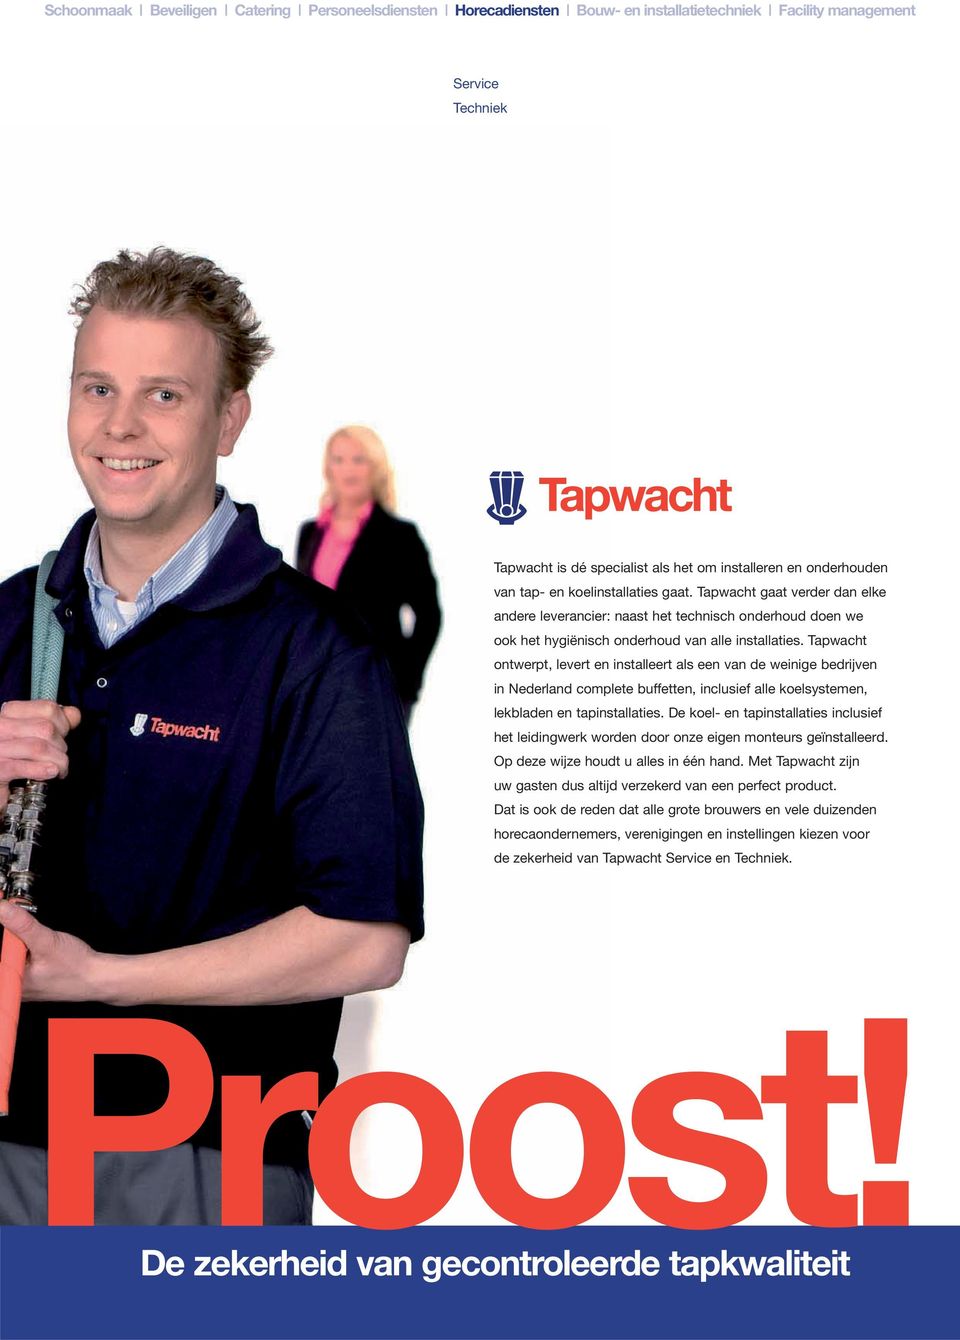 Tapwacht ontwerpt, levert en installeert als een van de weinige bedrijven in Nederland complete buffetten, inclusief alle koelsystemen, lekbladen en tapinstallaties.